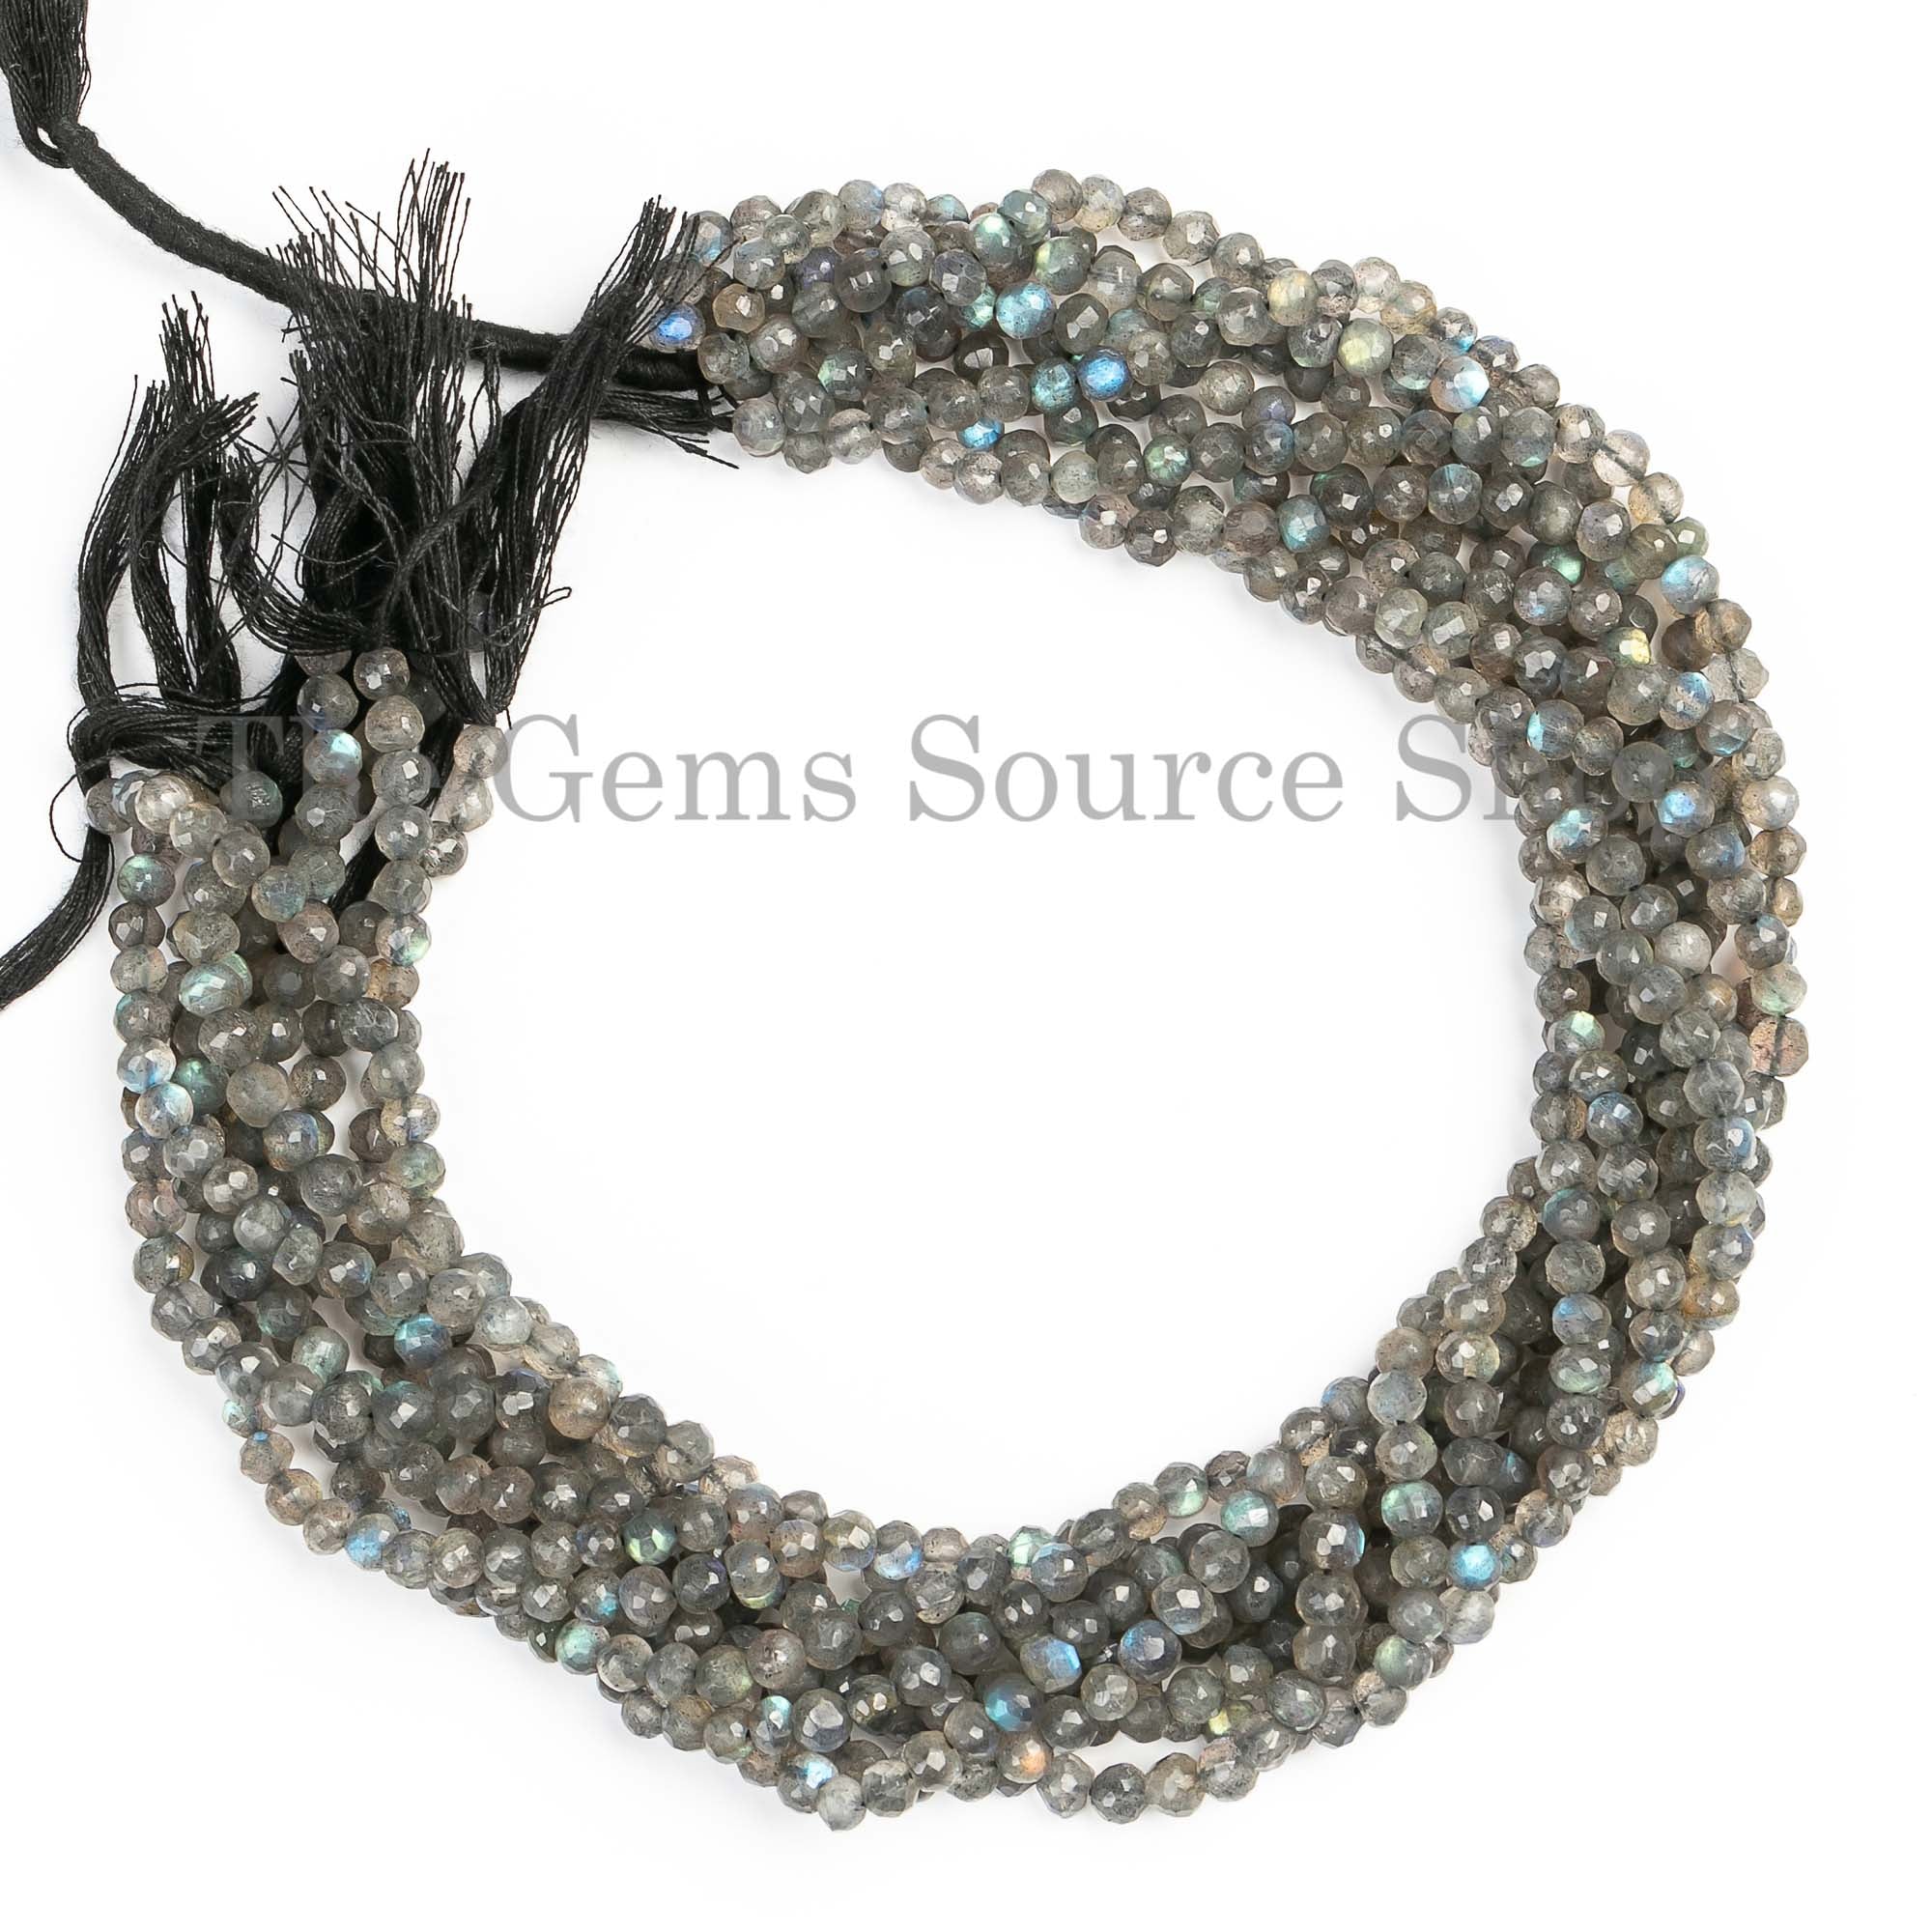 Best Selling Labradorite Beads, Labradorite Faceted Beads, Labradorite Round Shape Beads